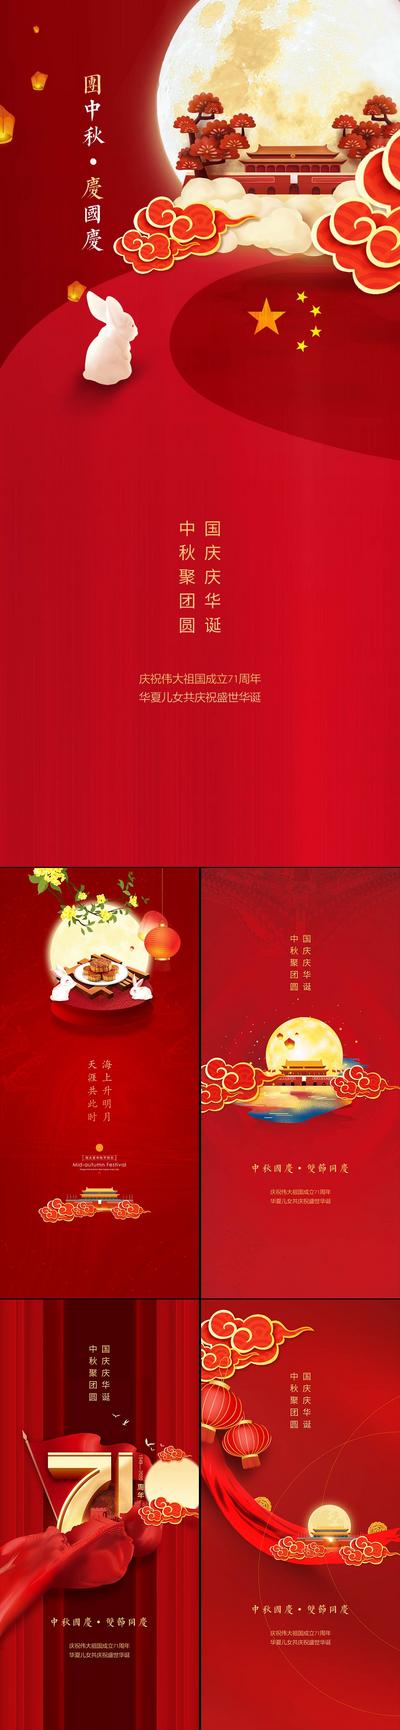 南门网 海报 中国传统节日 公历节日 中秋节 国庆 红色 祥云 系列